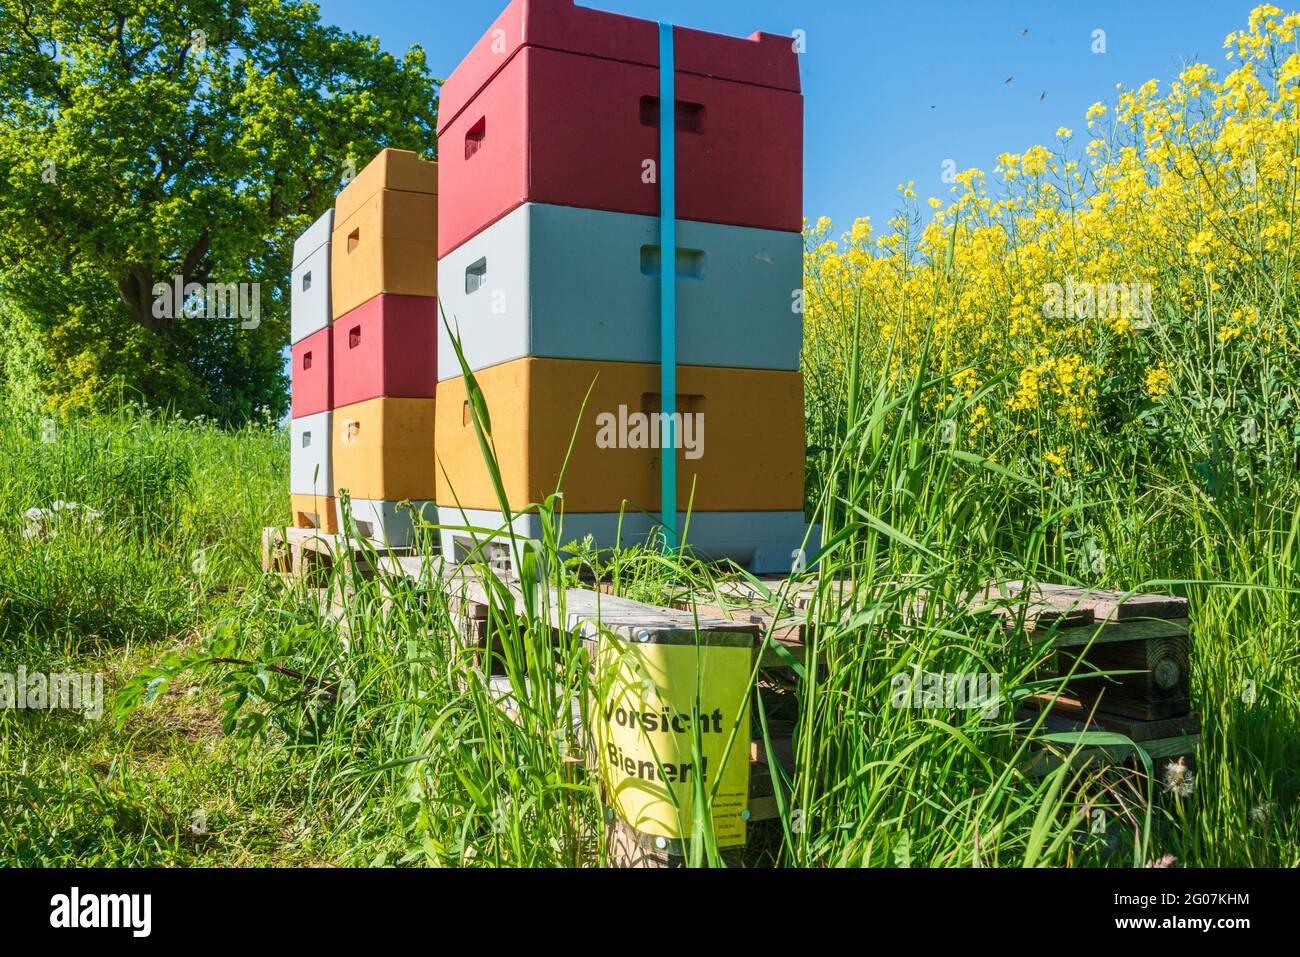 Bienenkörbe an einem in voller Blüte stehenden Rapsfeld Stock Photo